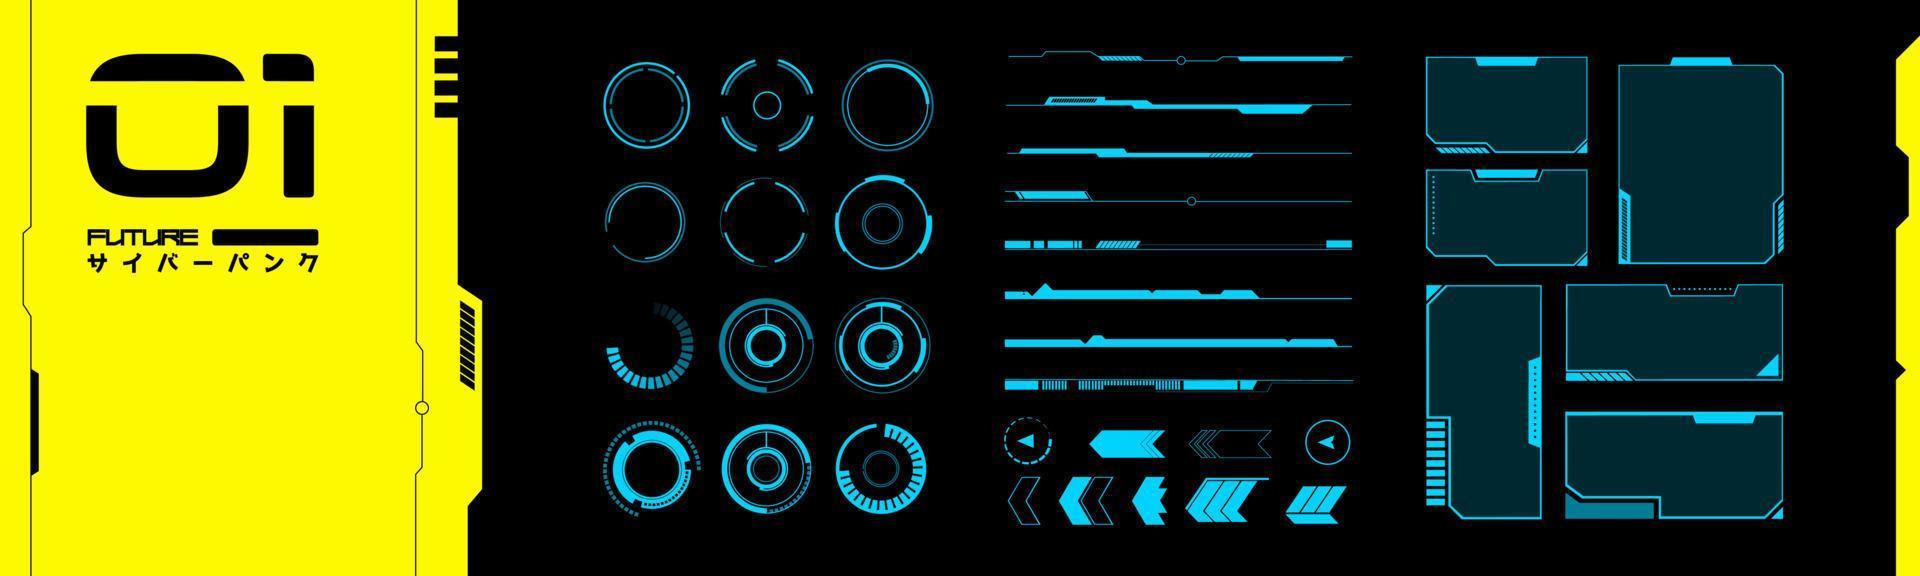 impostato di vr elementi. collezione di interfaccia oggetti nel cyberpunk stile. futuristico design per il tuo applicazione, Software, struttura. futuro vettore oggetti a partire dal 2077.